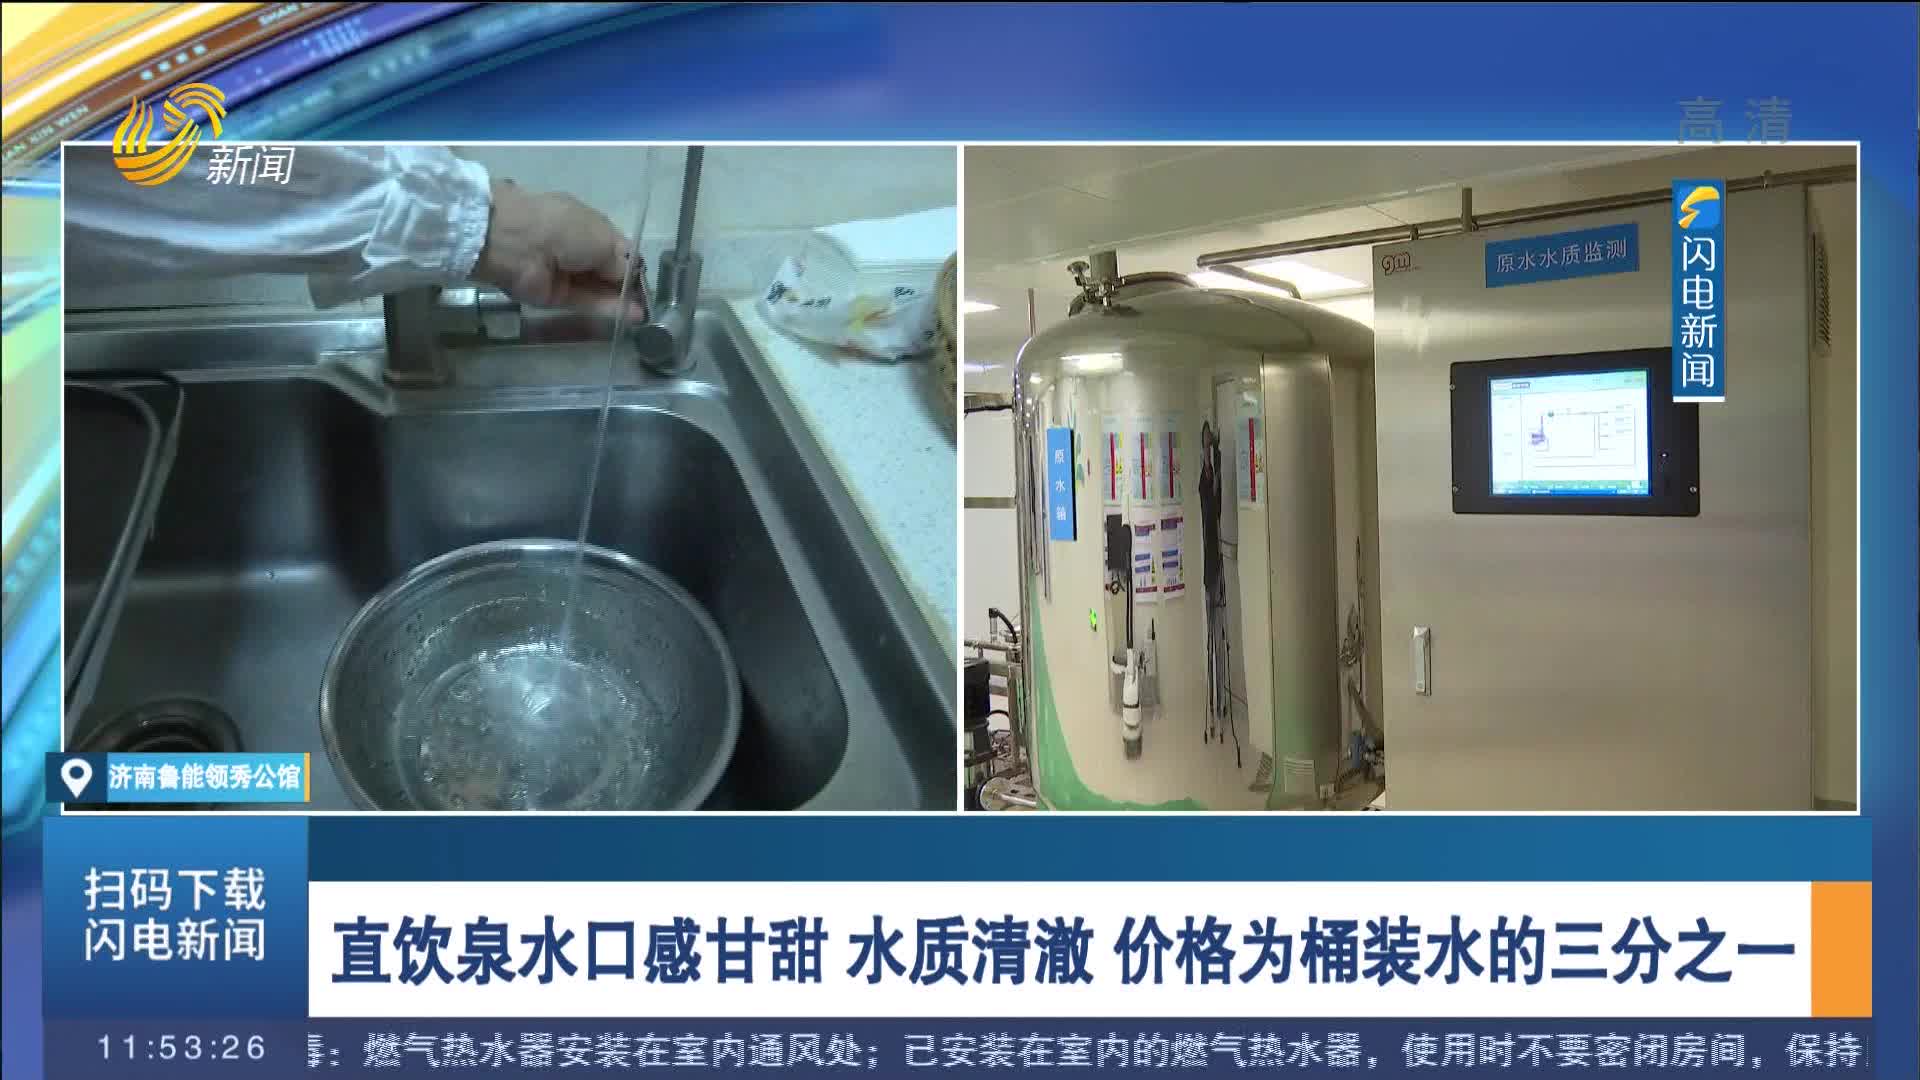 【闪电连线】济南市泉水直饮试点工程：市民在家中也能喝到甘甜的泉水